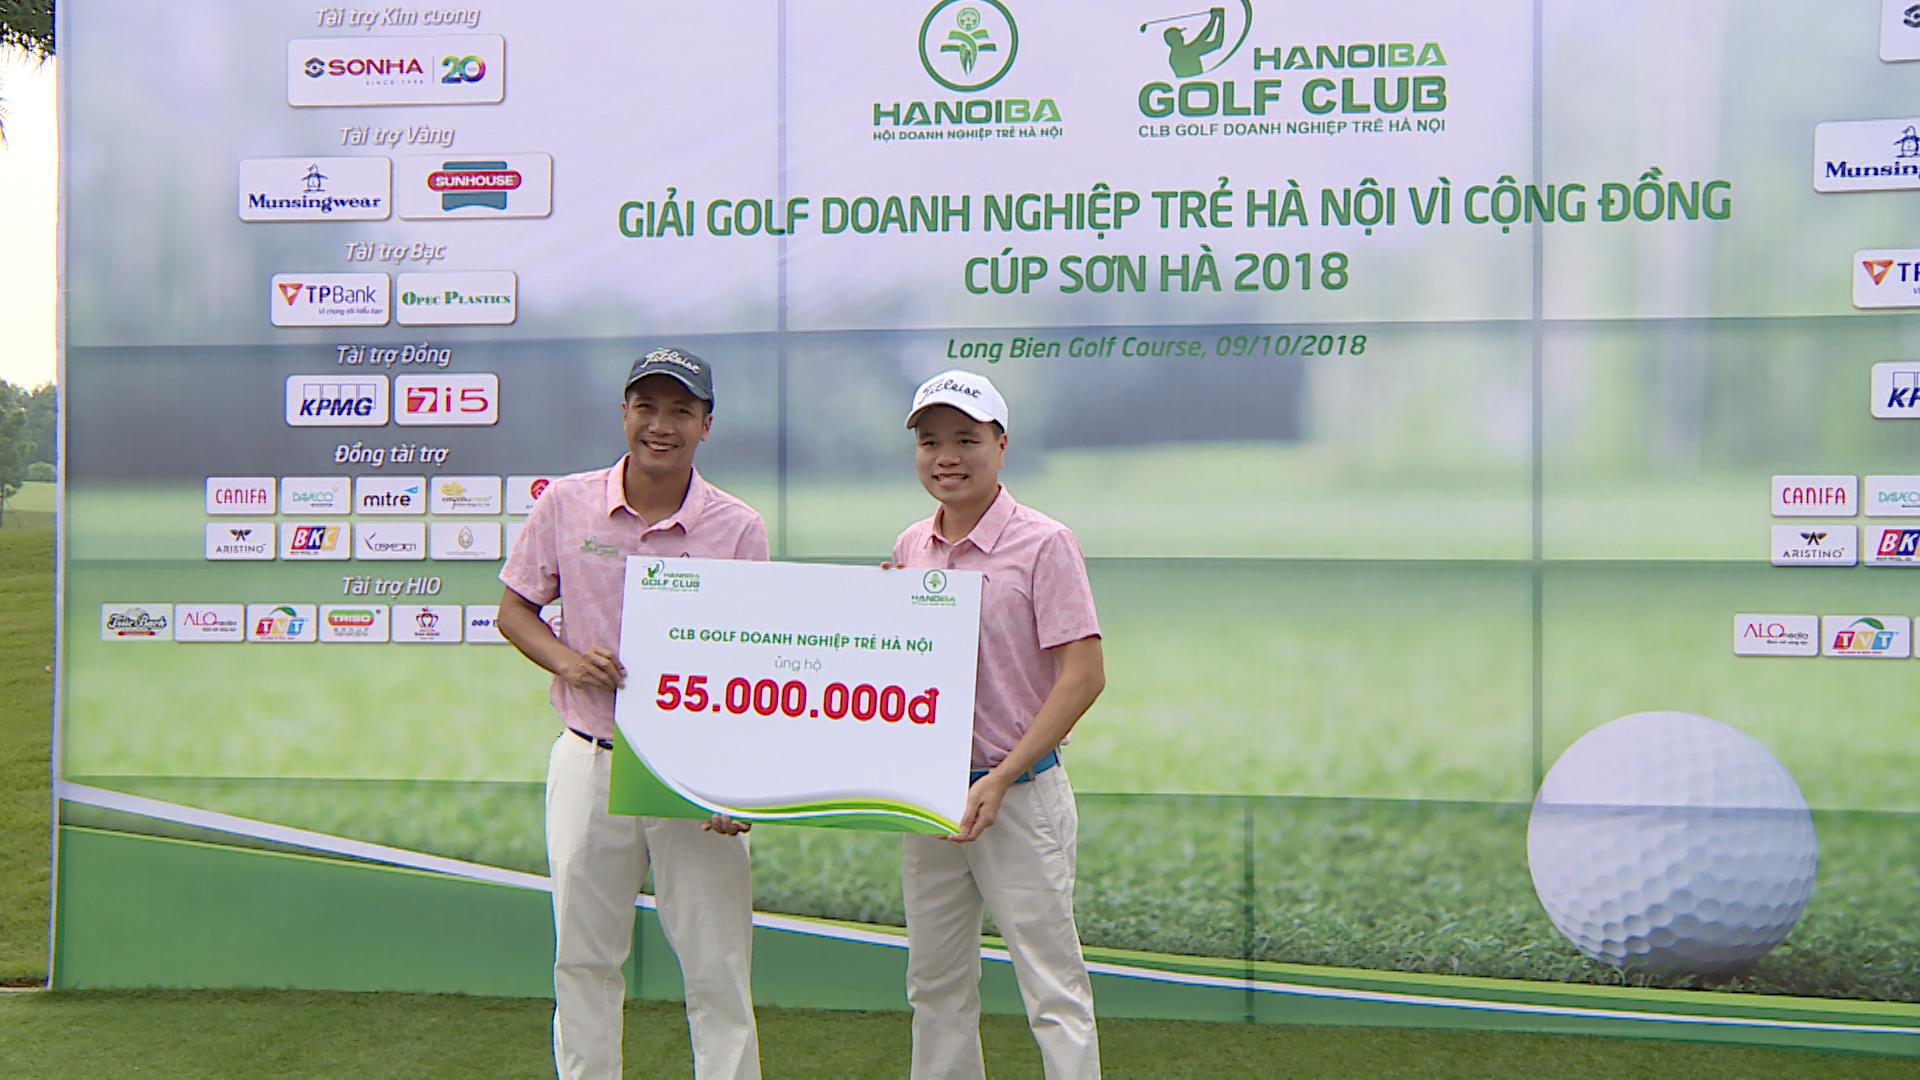 “Giải Golf Doanh nghiệp Trẻ Hà Nội Vì Cộng đồng - CÚP SƠN HÀ 2018”